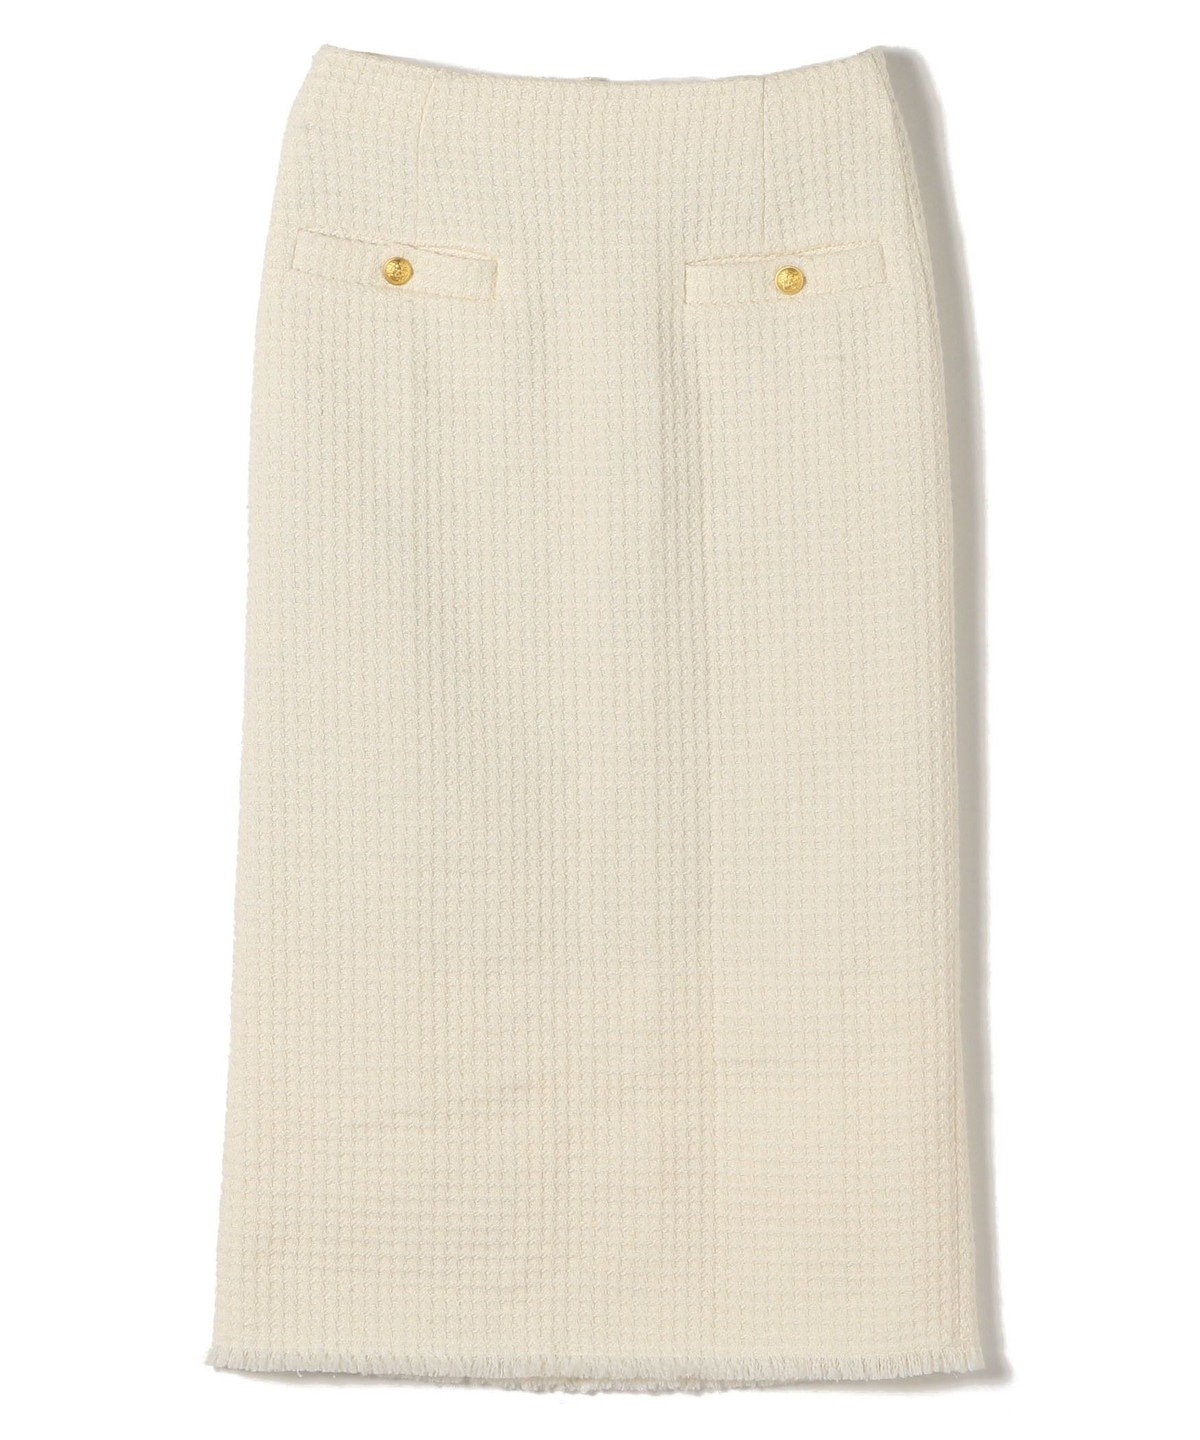 ツイード ポケット デザイン スカート ◇: スカート SHIPS 公式サイト